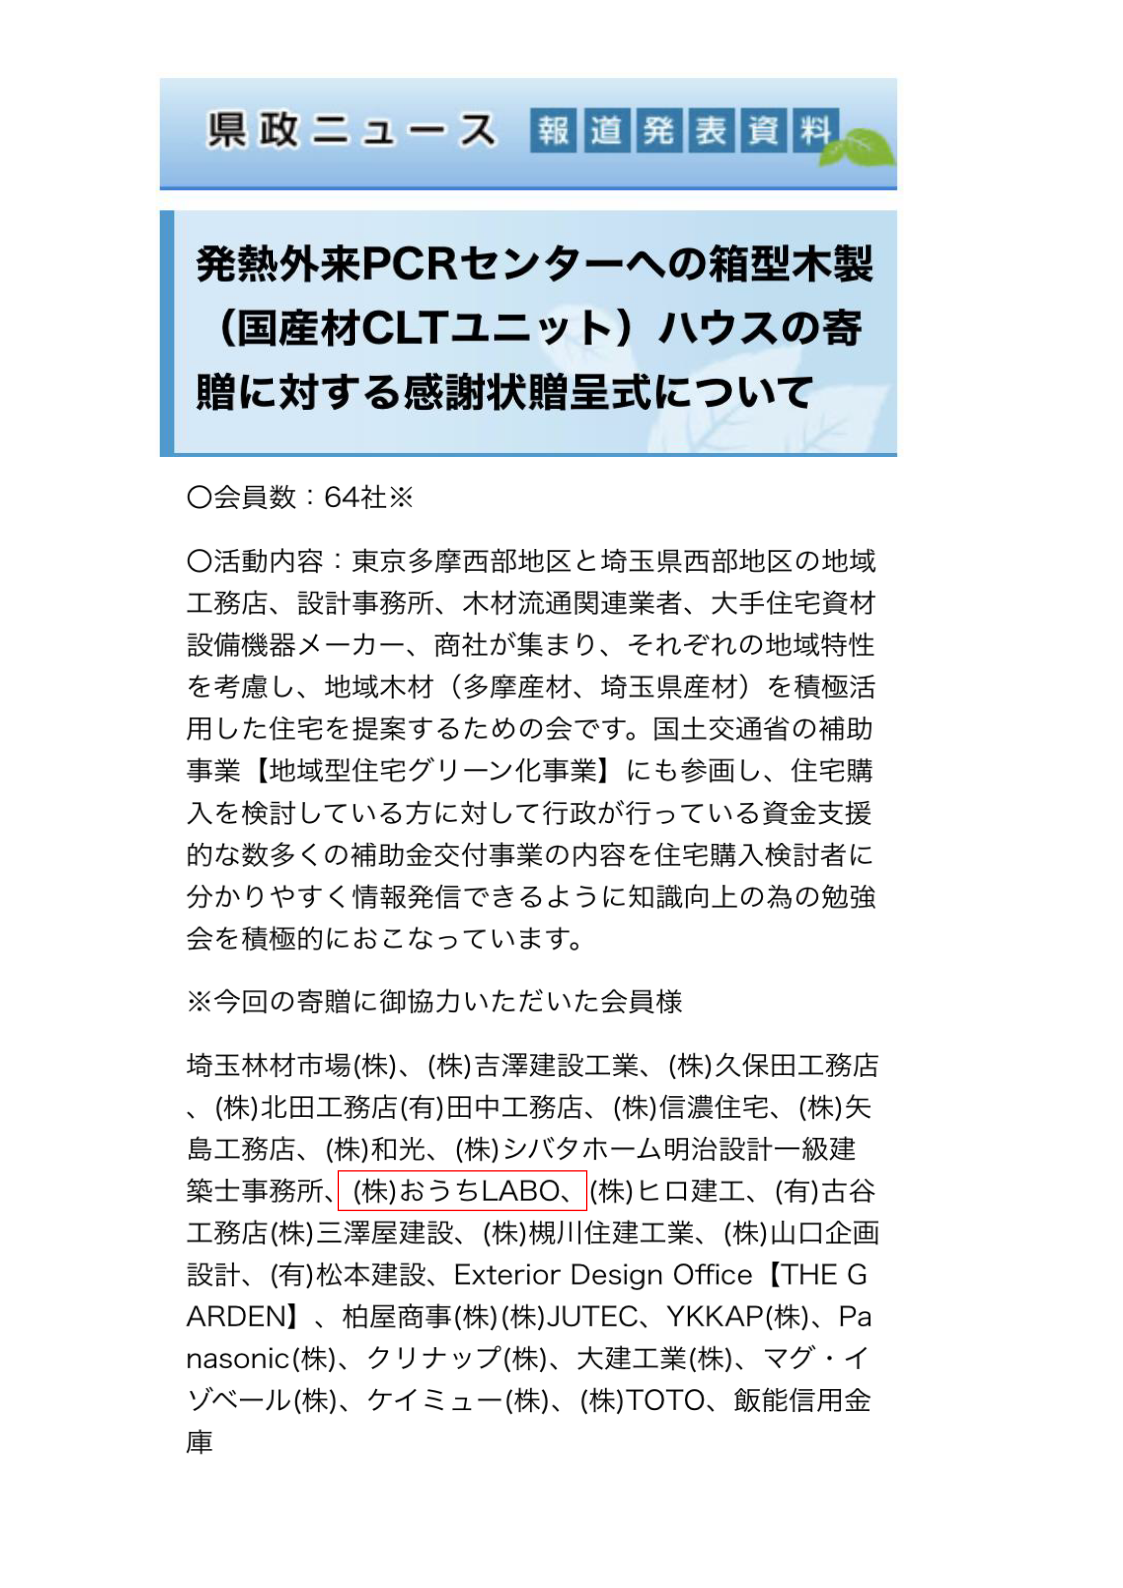 PCR検査場設置【埼玉県の新型コロナ感染対策に協力】 アイキャッチ画像